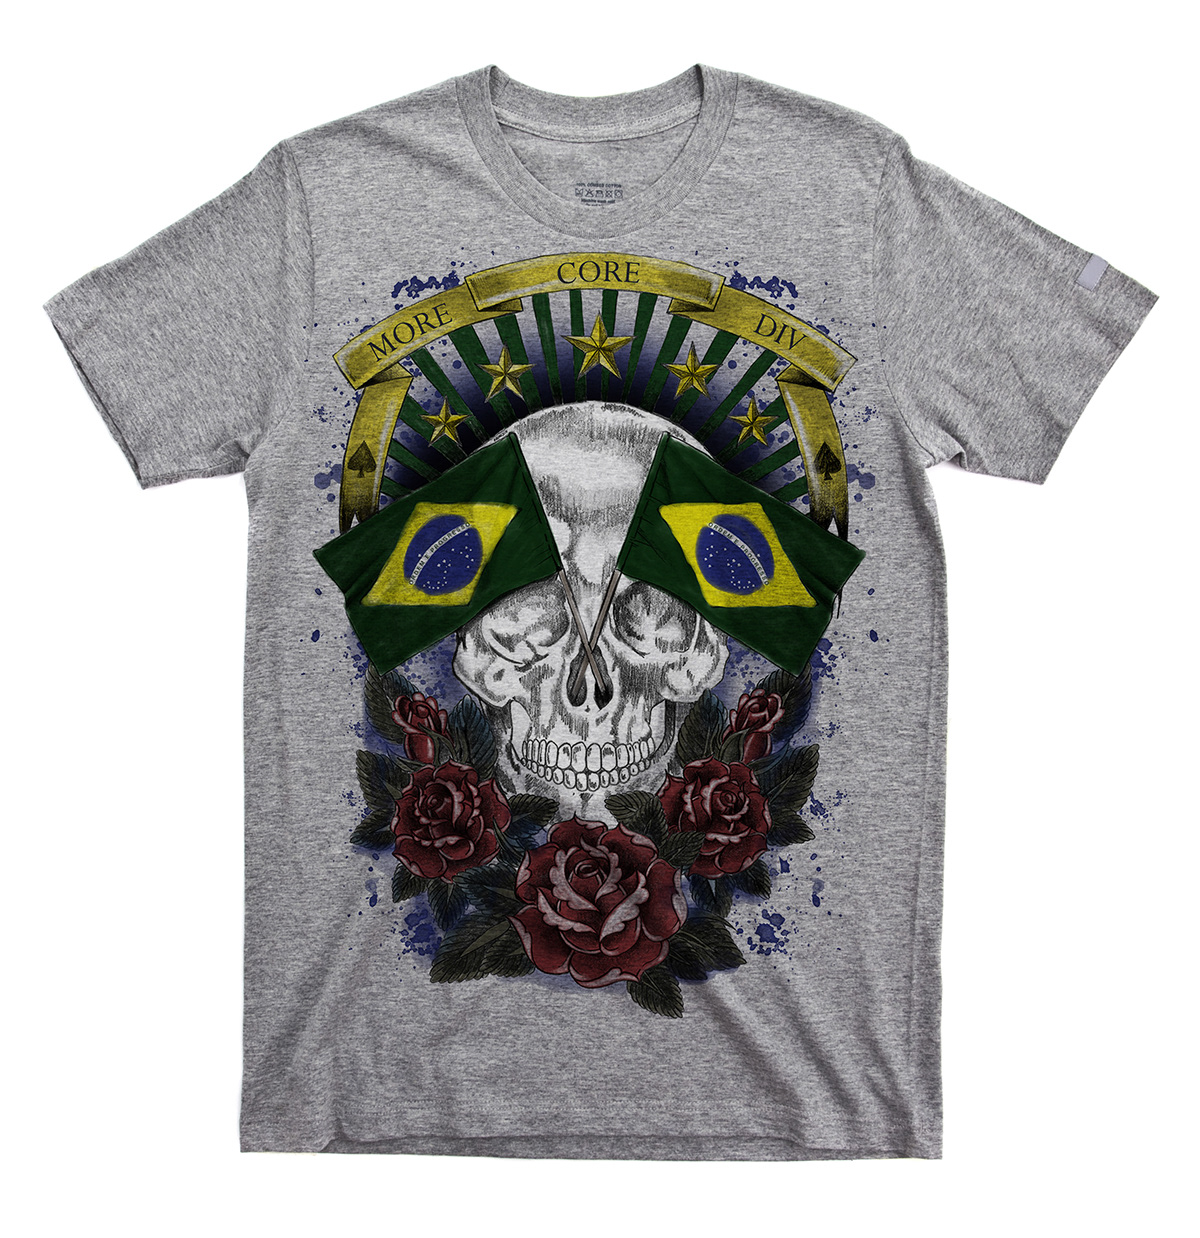 Estampa mcd Brasil designer textil print tshirt